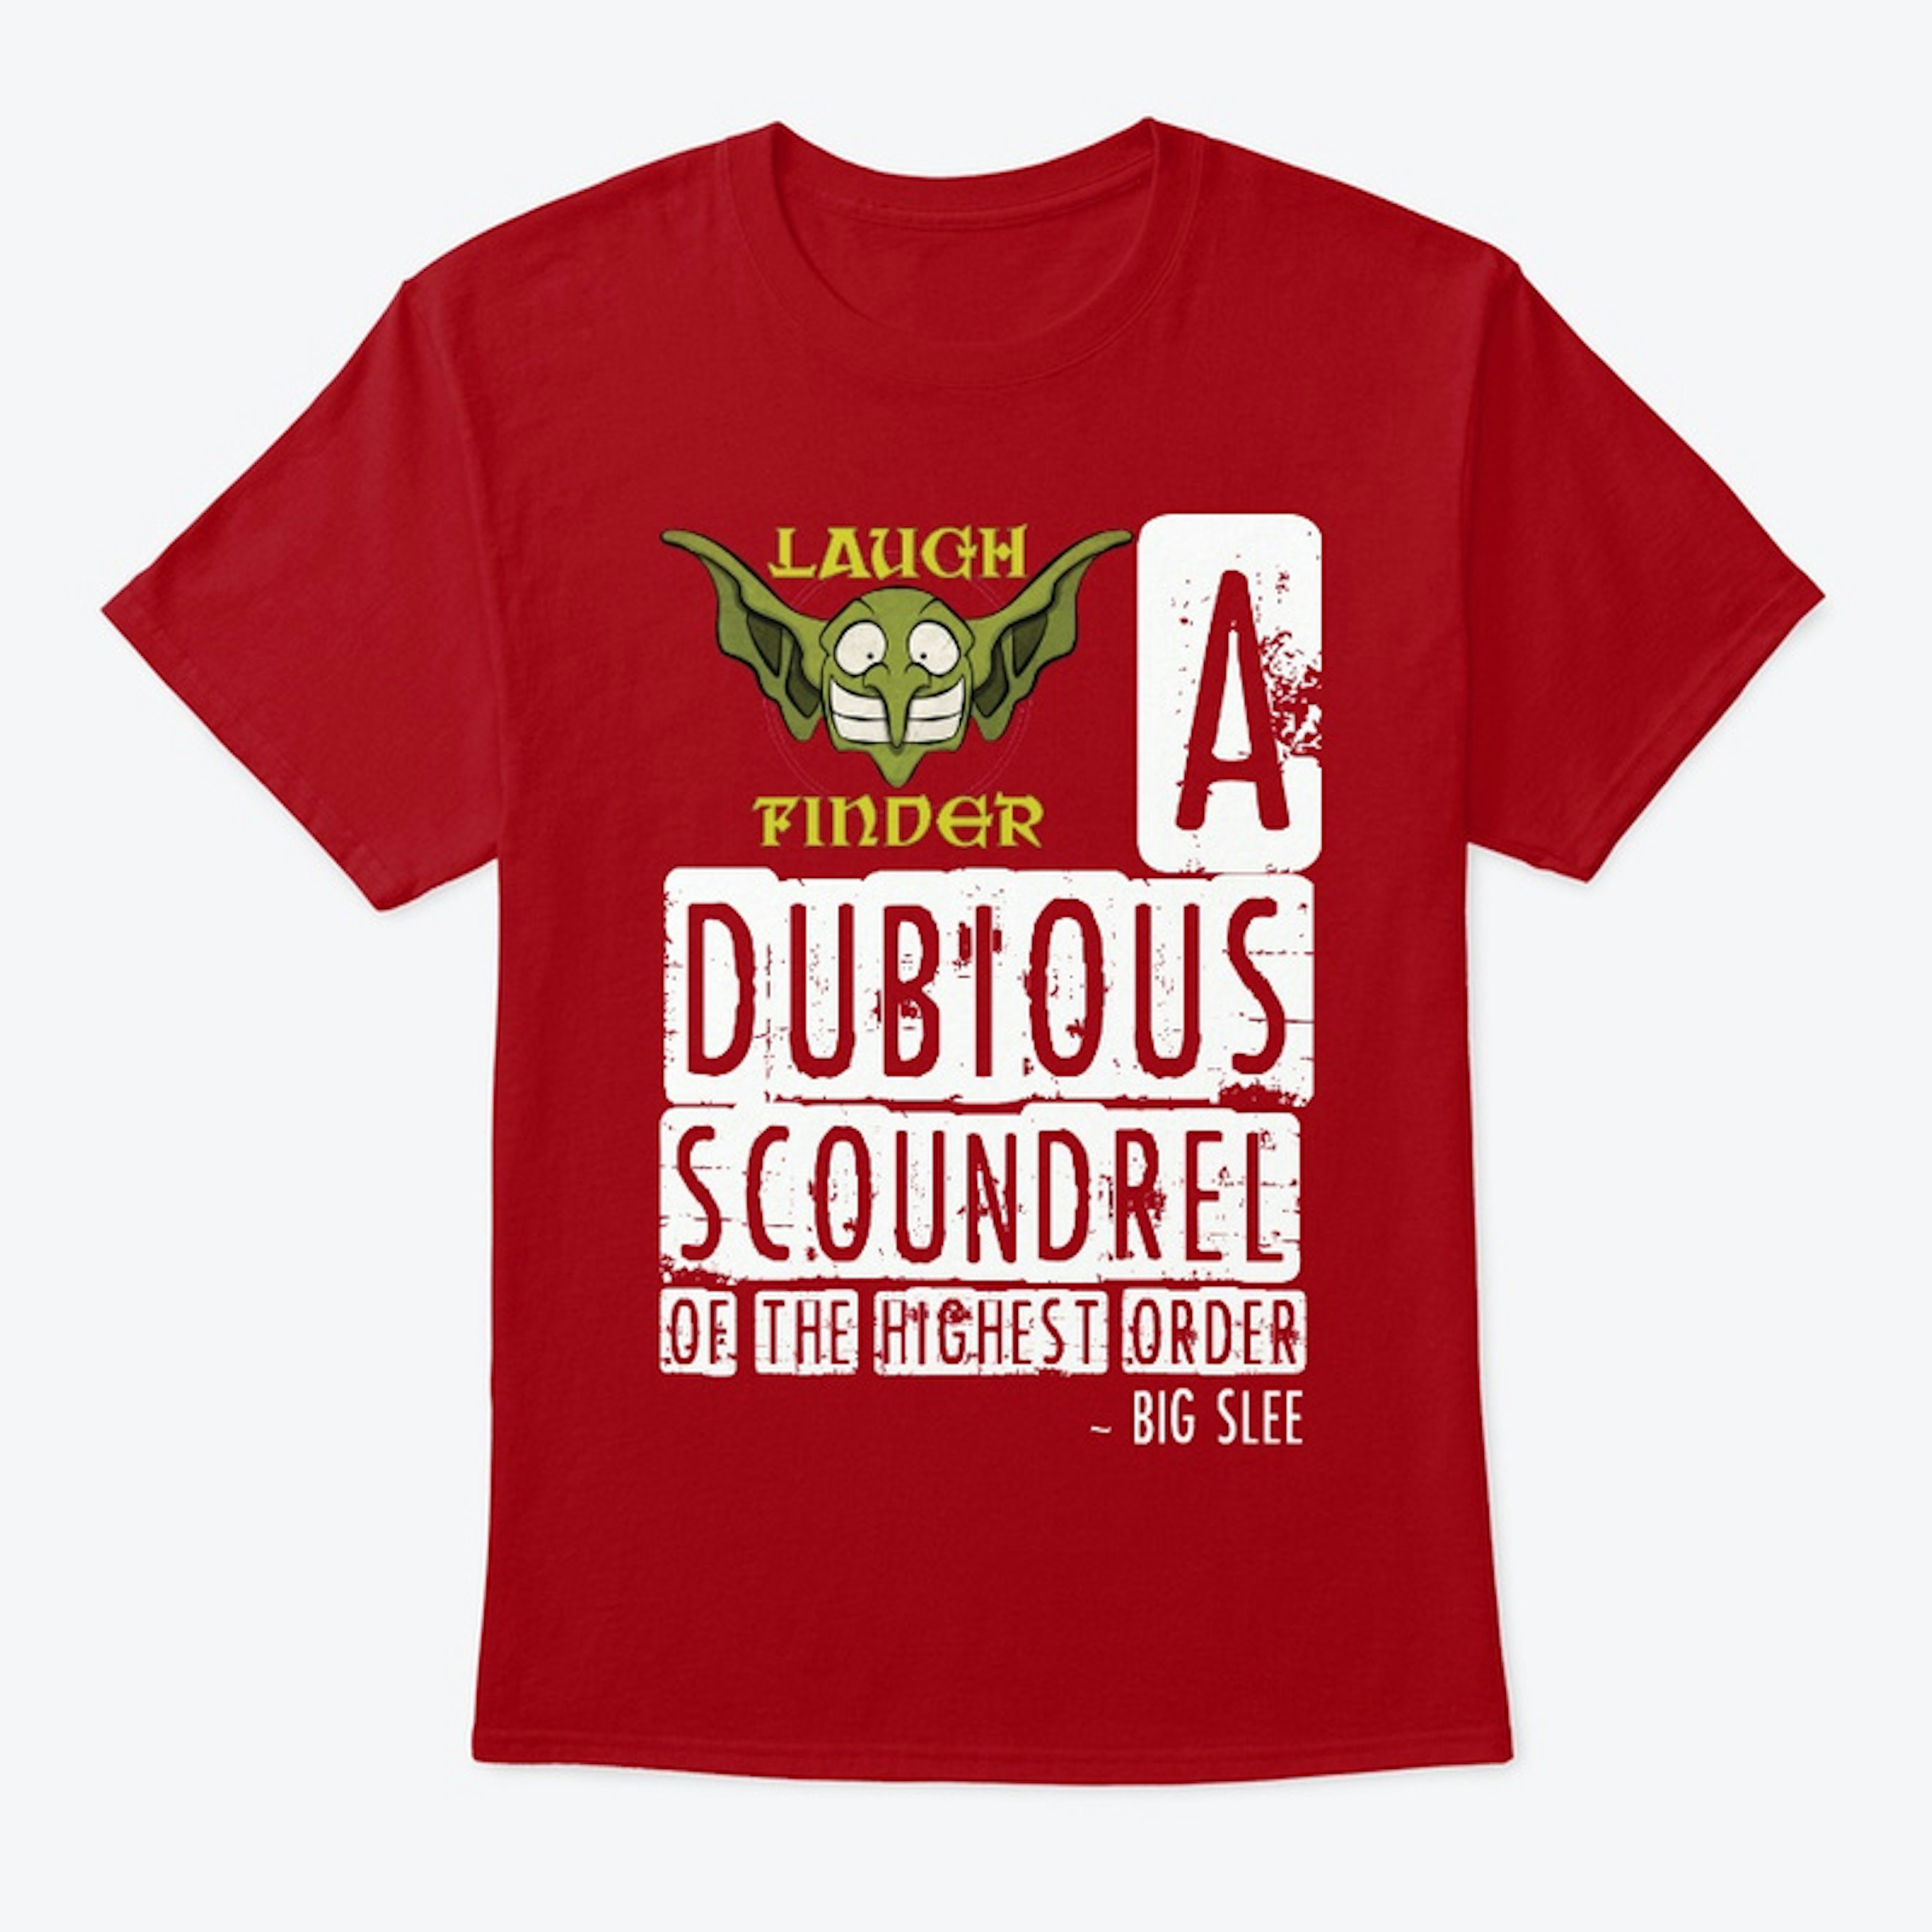 Dubious Scoundrel